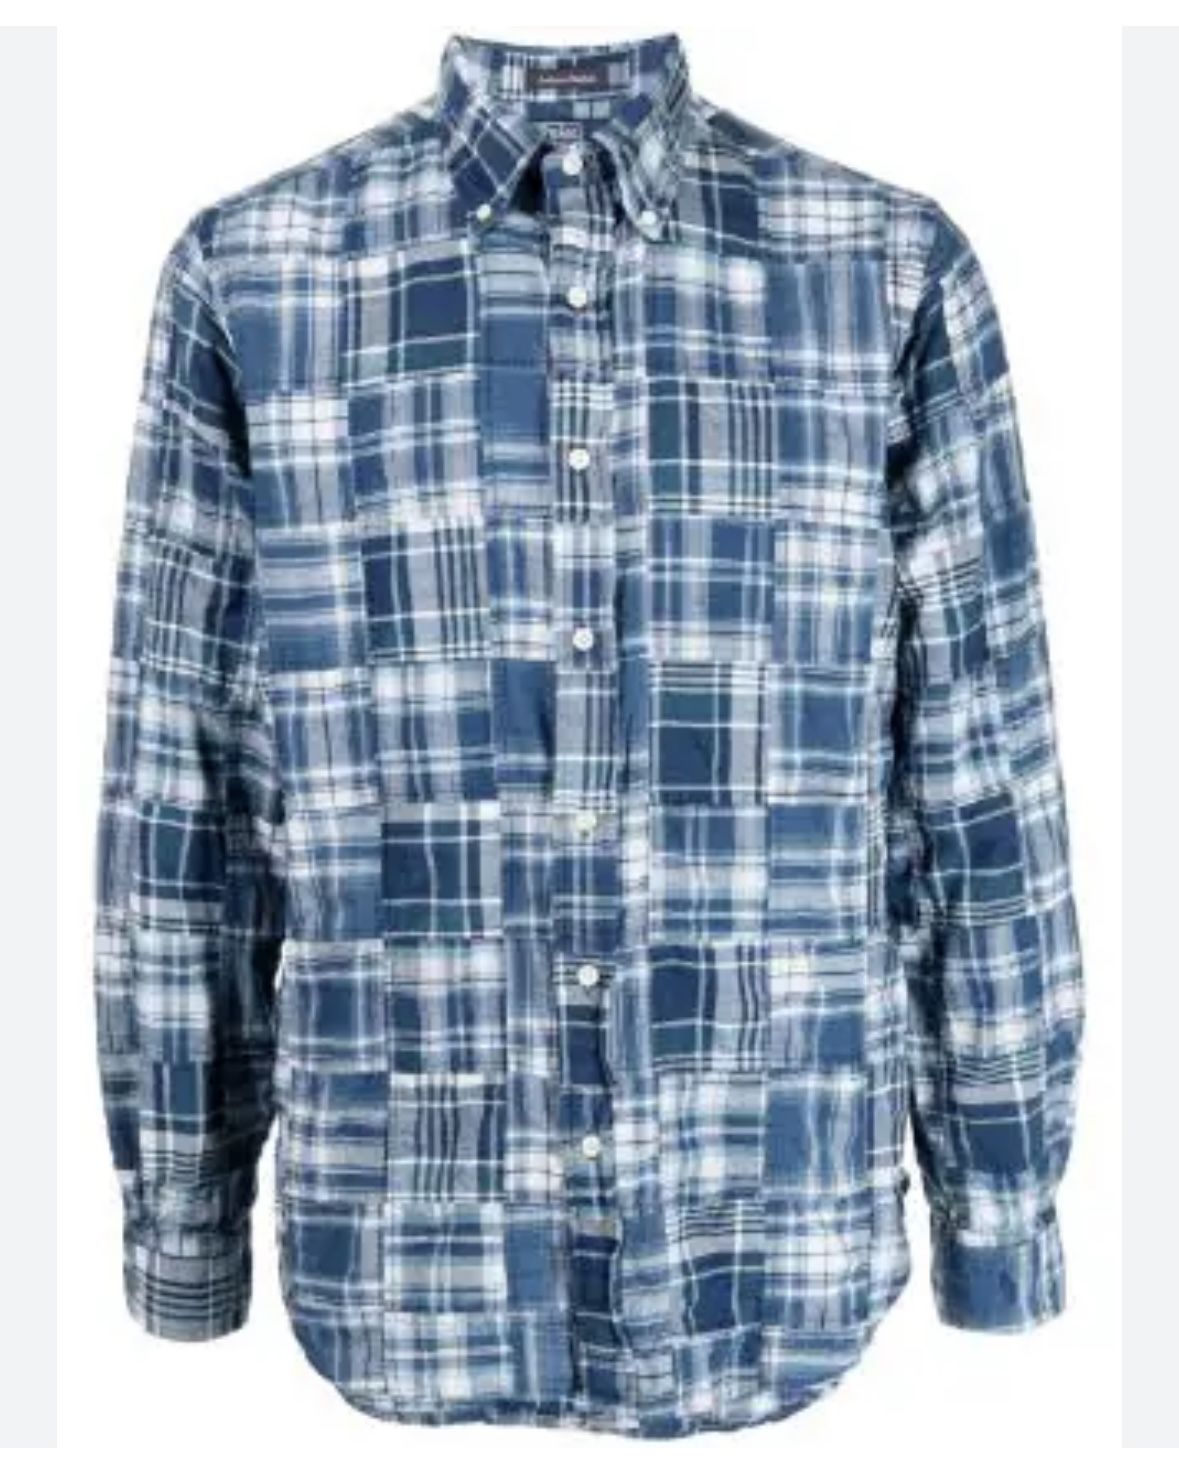 Ralph Lauren Indigo Patchwork Button Down Long sleeve Shirt Xl